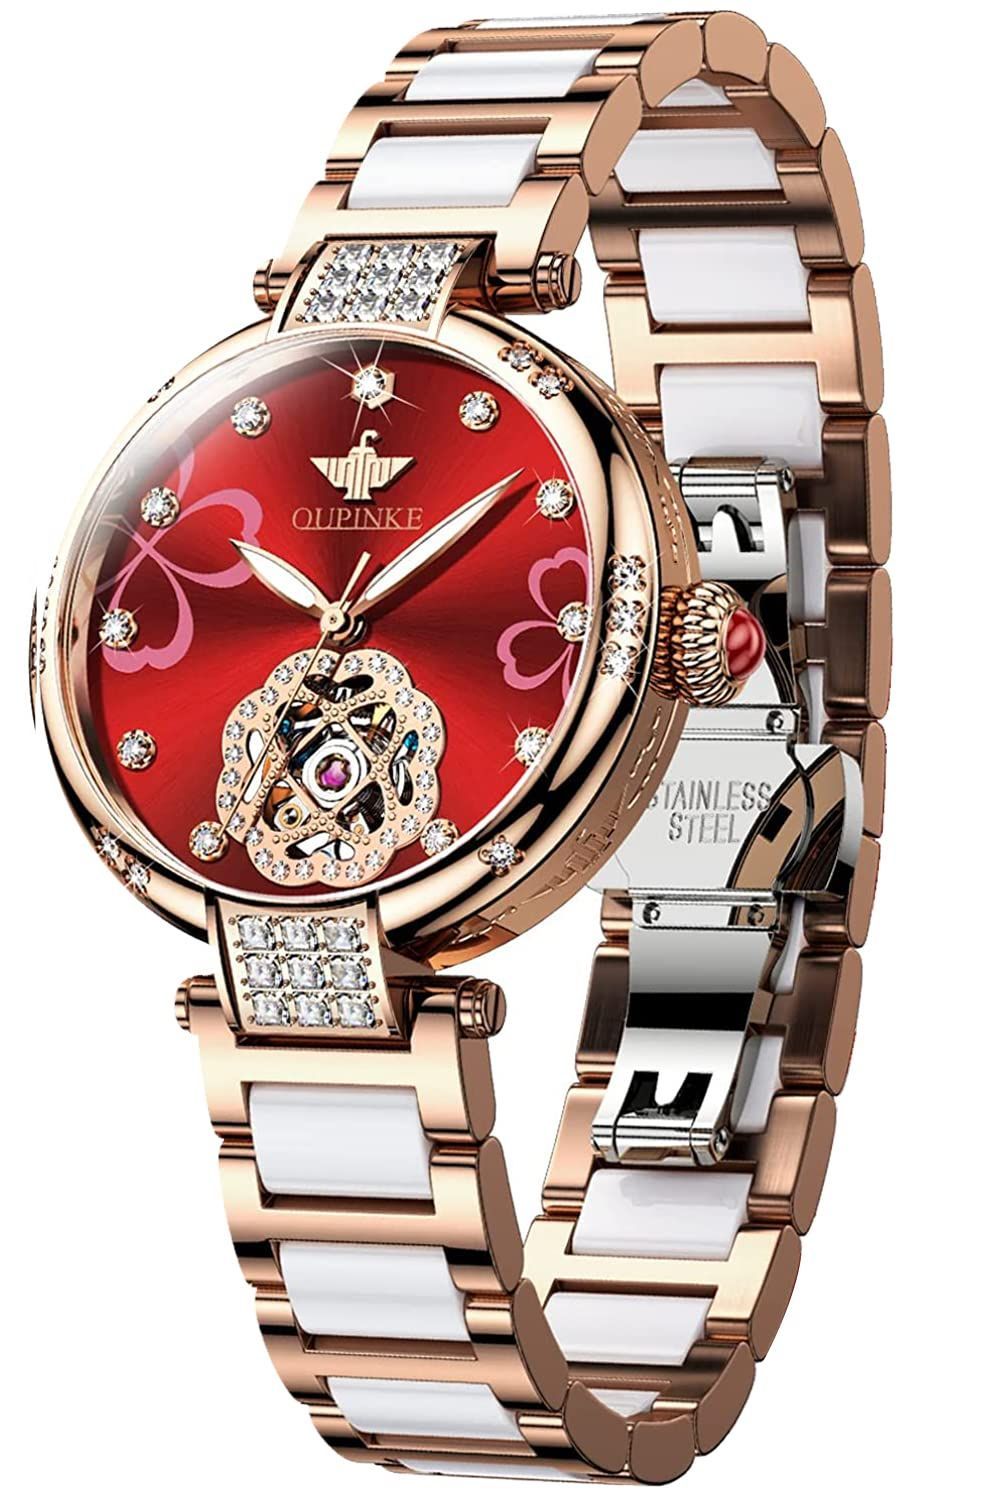 色: レッド】OUPINKE レデイース腕時計 自動巻き機械式 うで時計 高級 